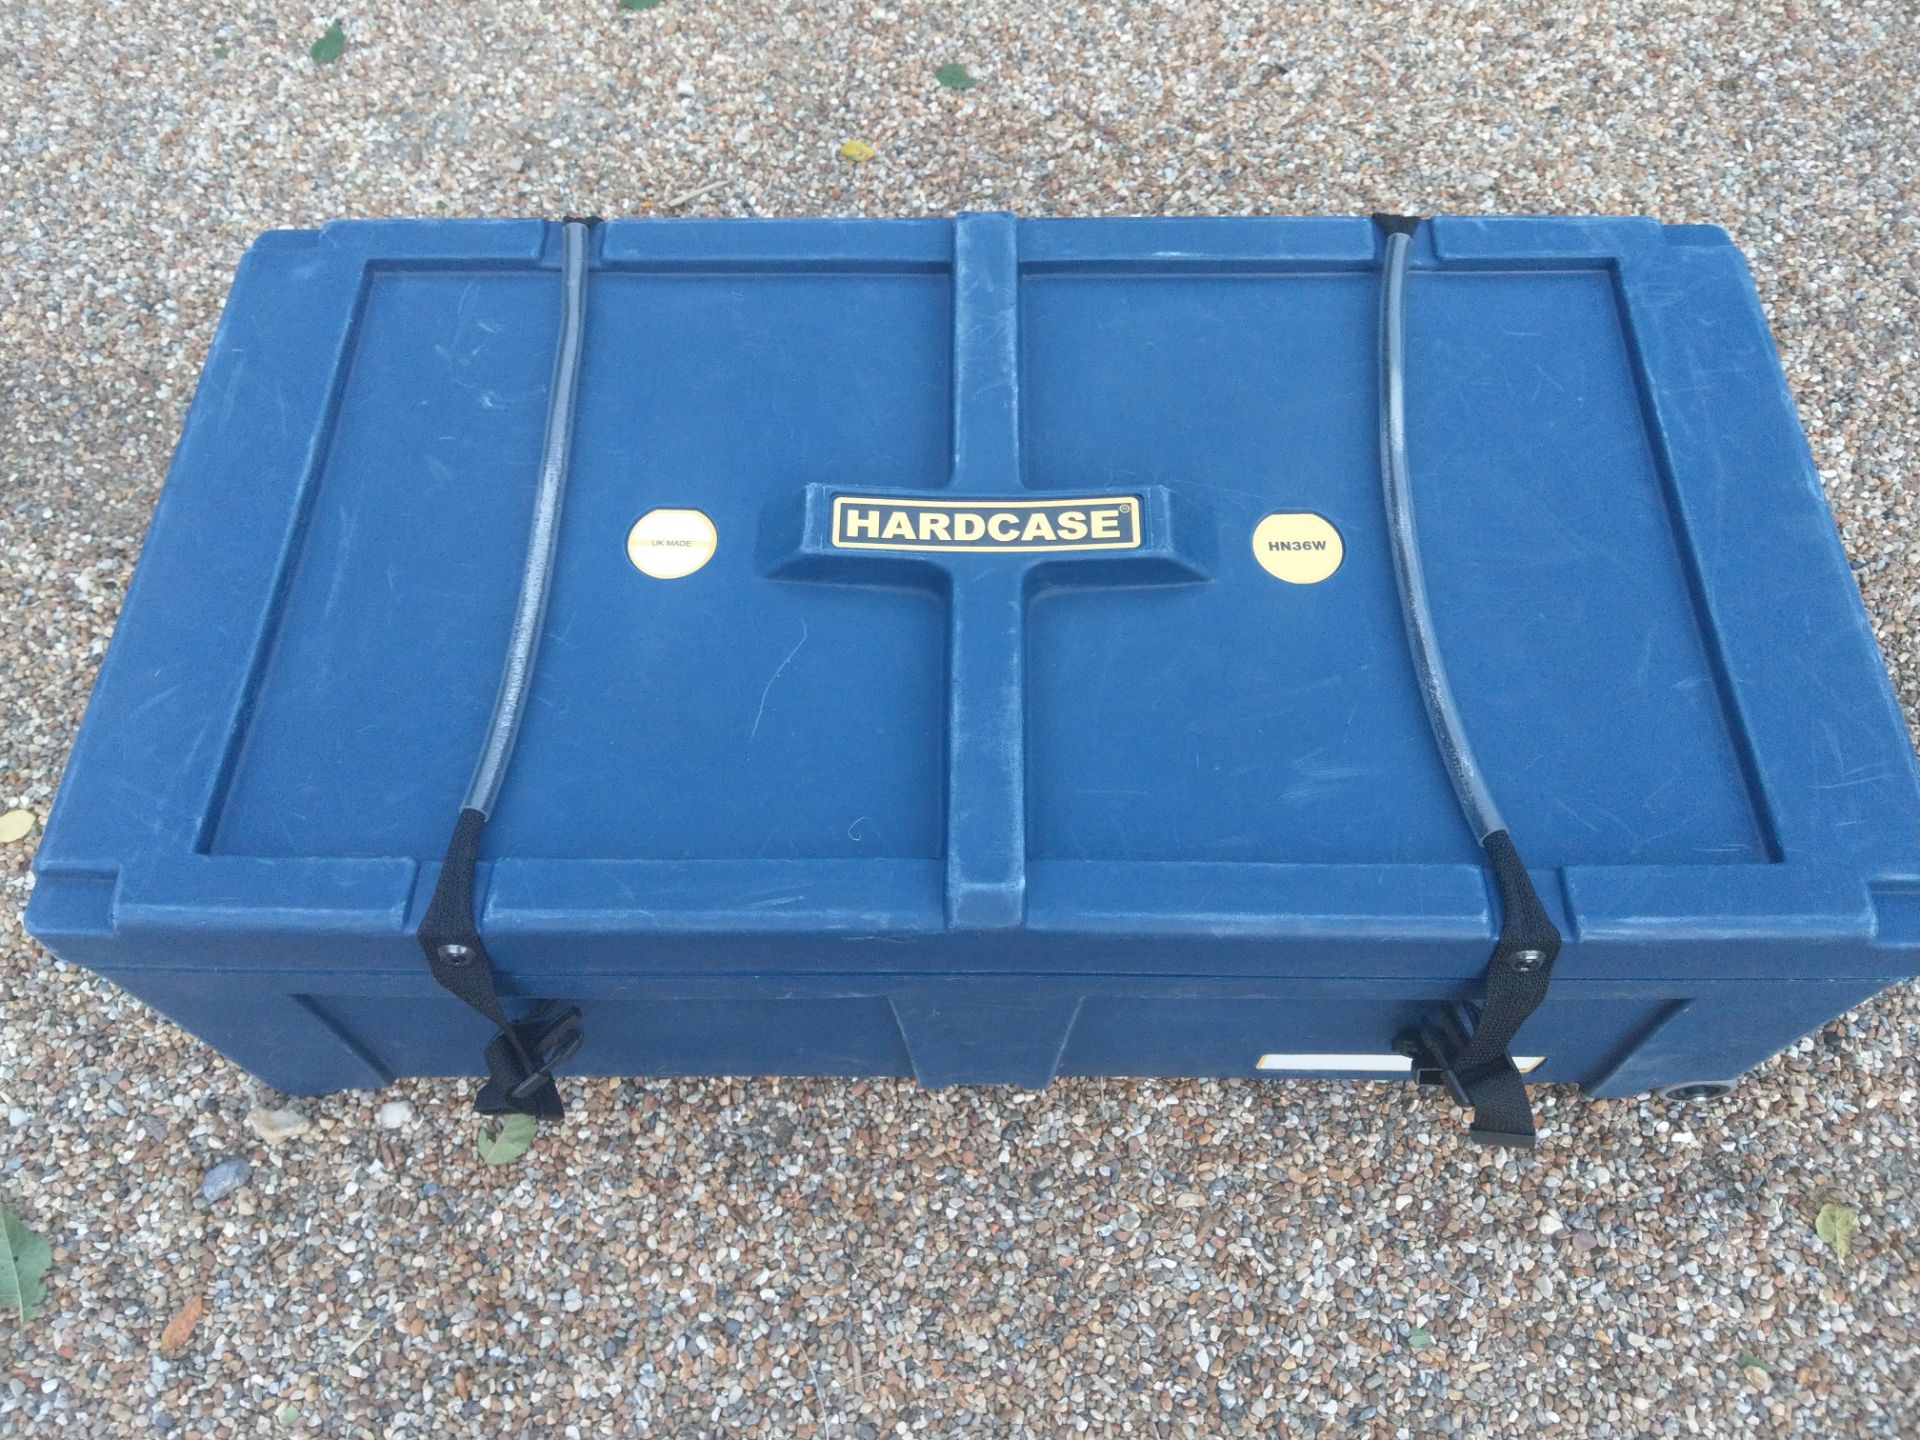 1x Hardcase instrument case HN36W